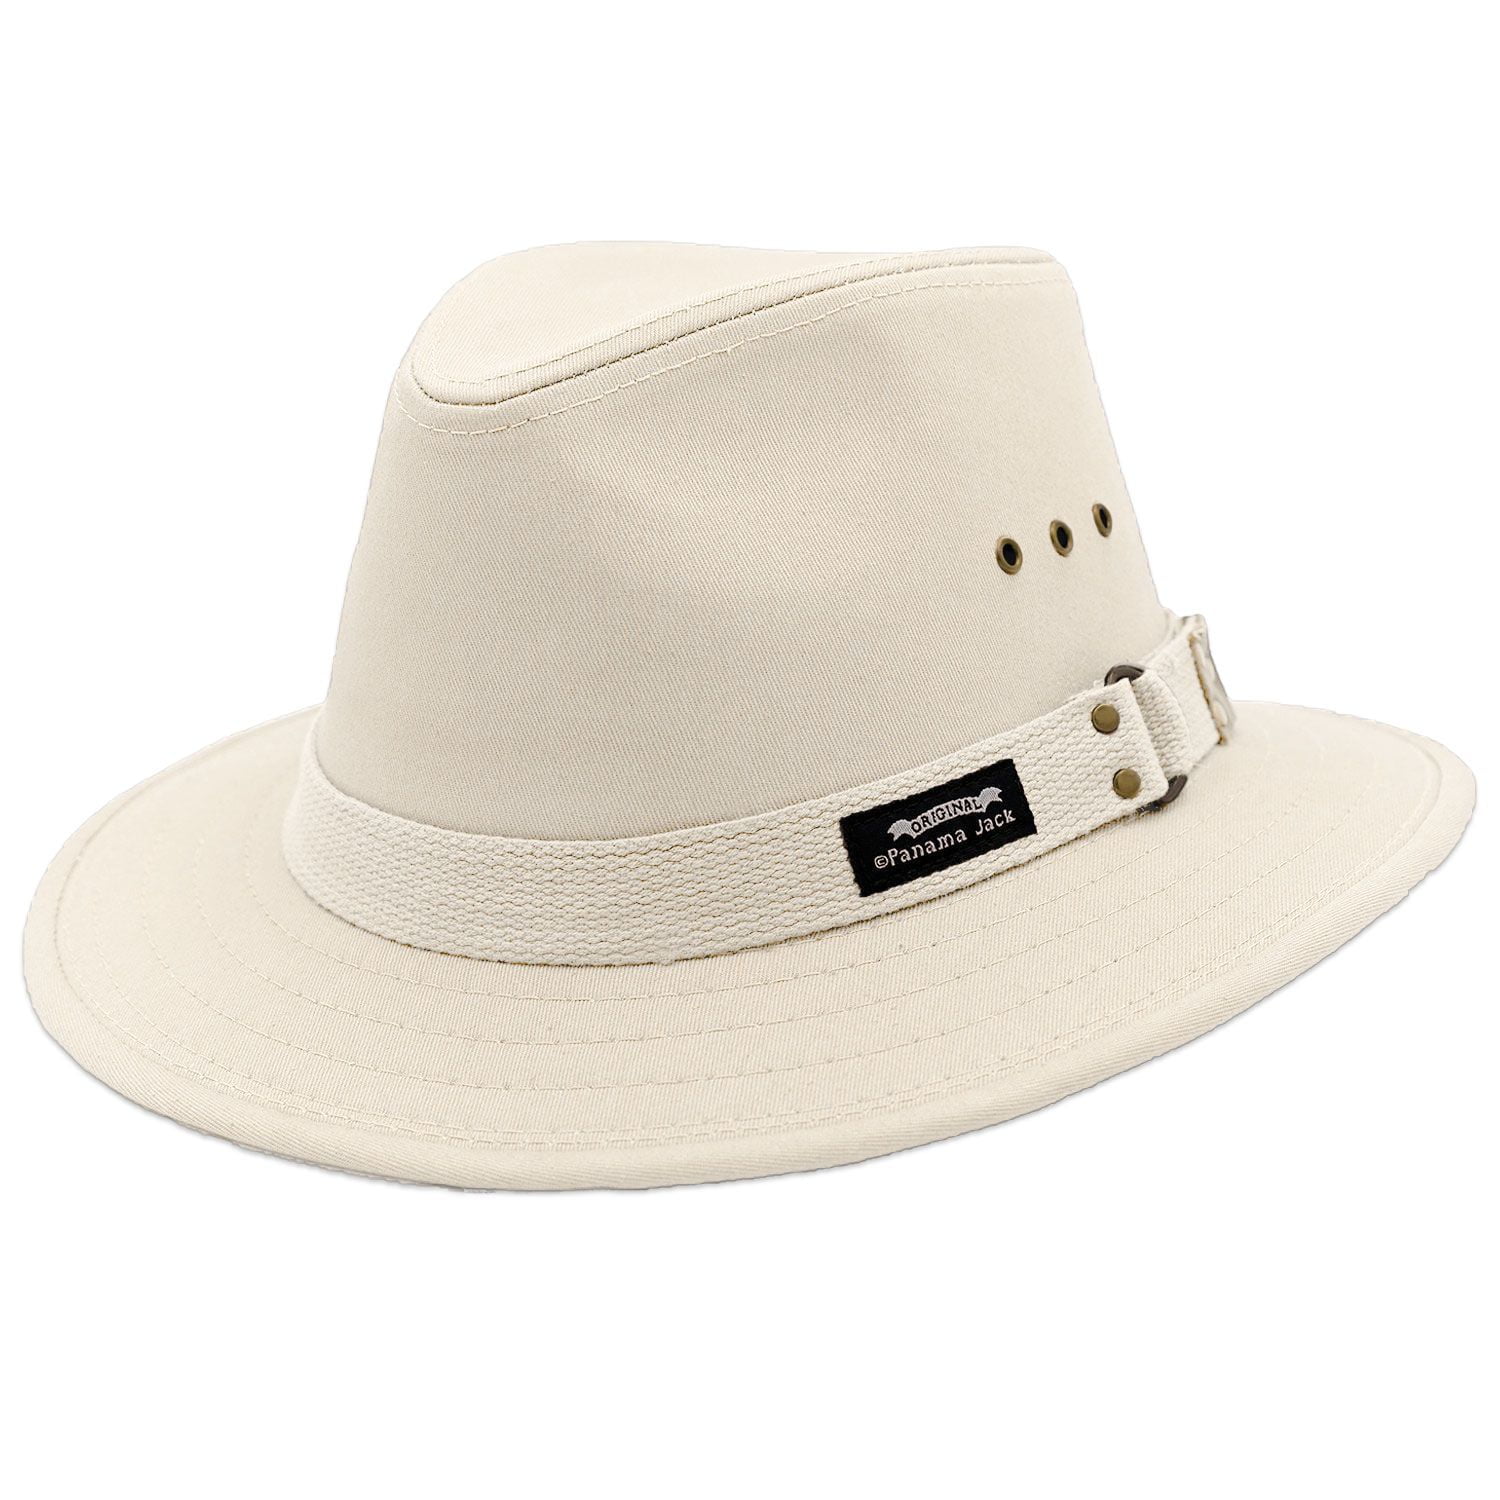 Panama Jack Natural Matte Toyo Safari Sun Hat 